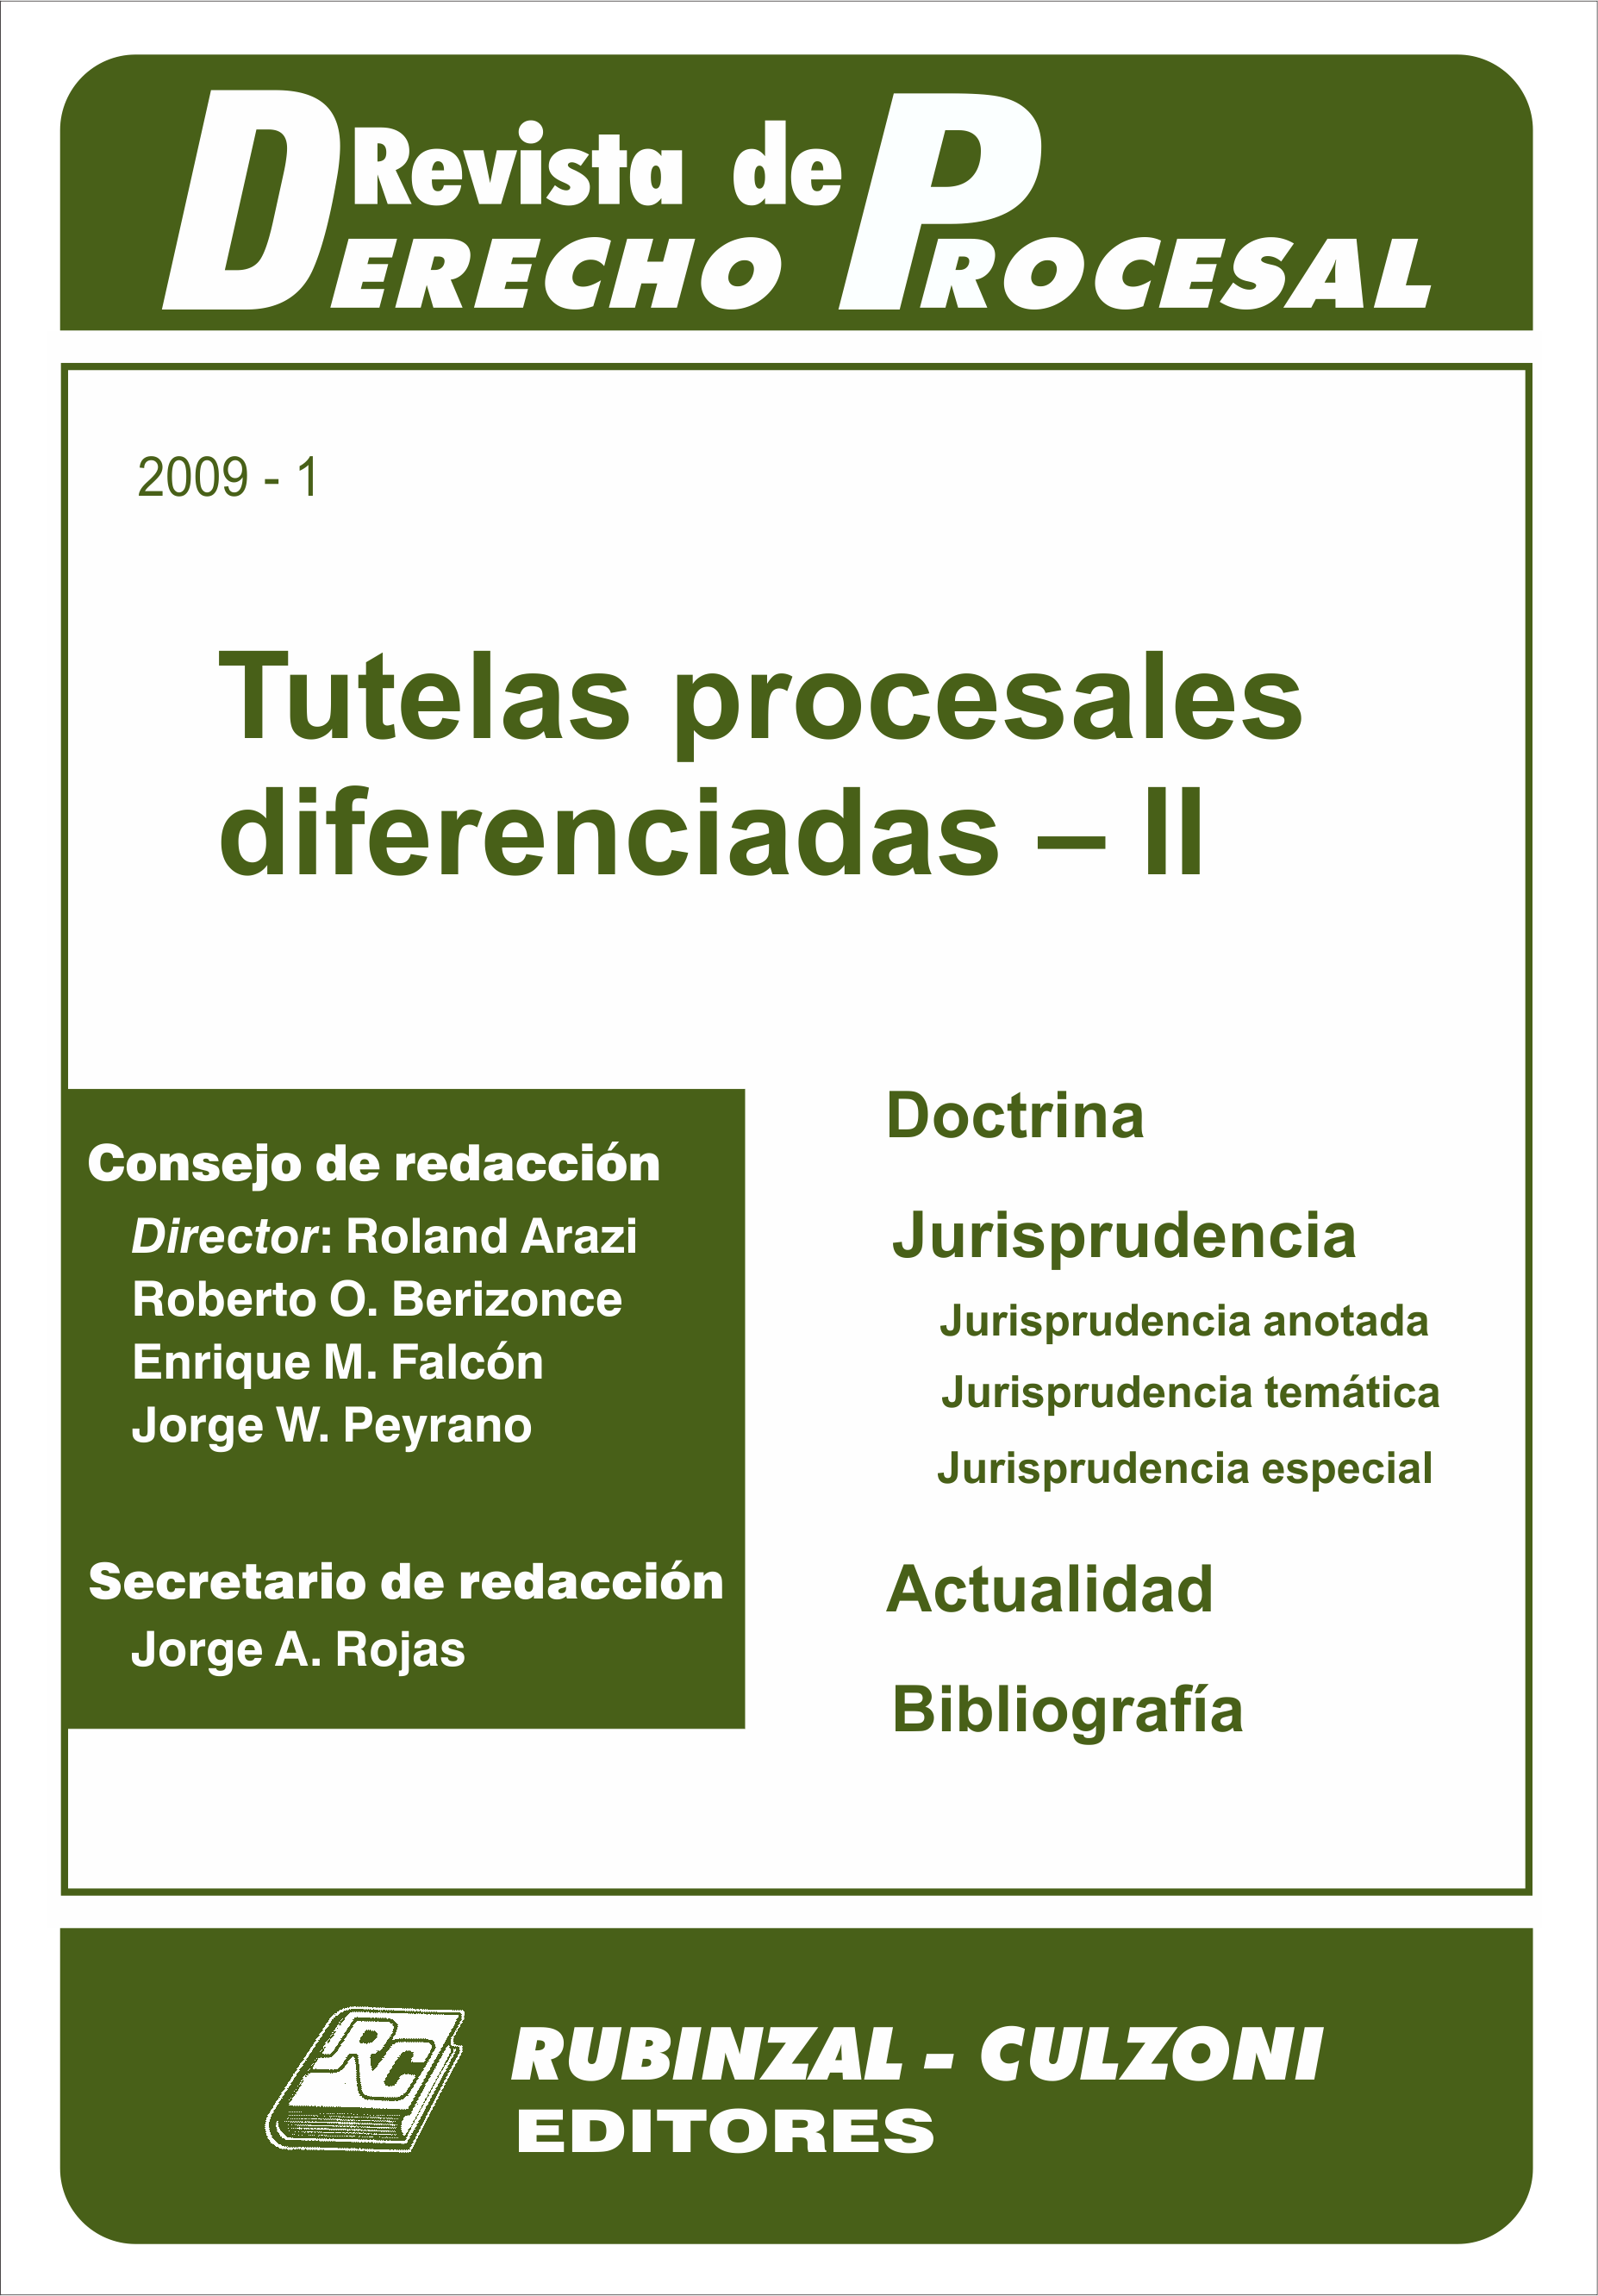 Revista de Derecho Procesal - Tutelas procesales diferenciadas - II.